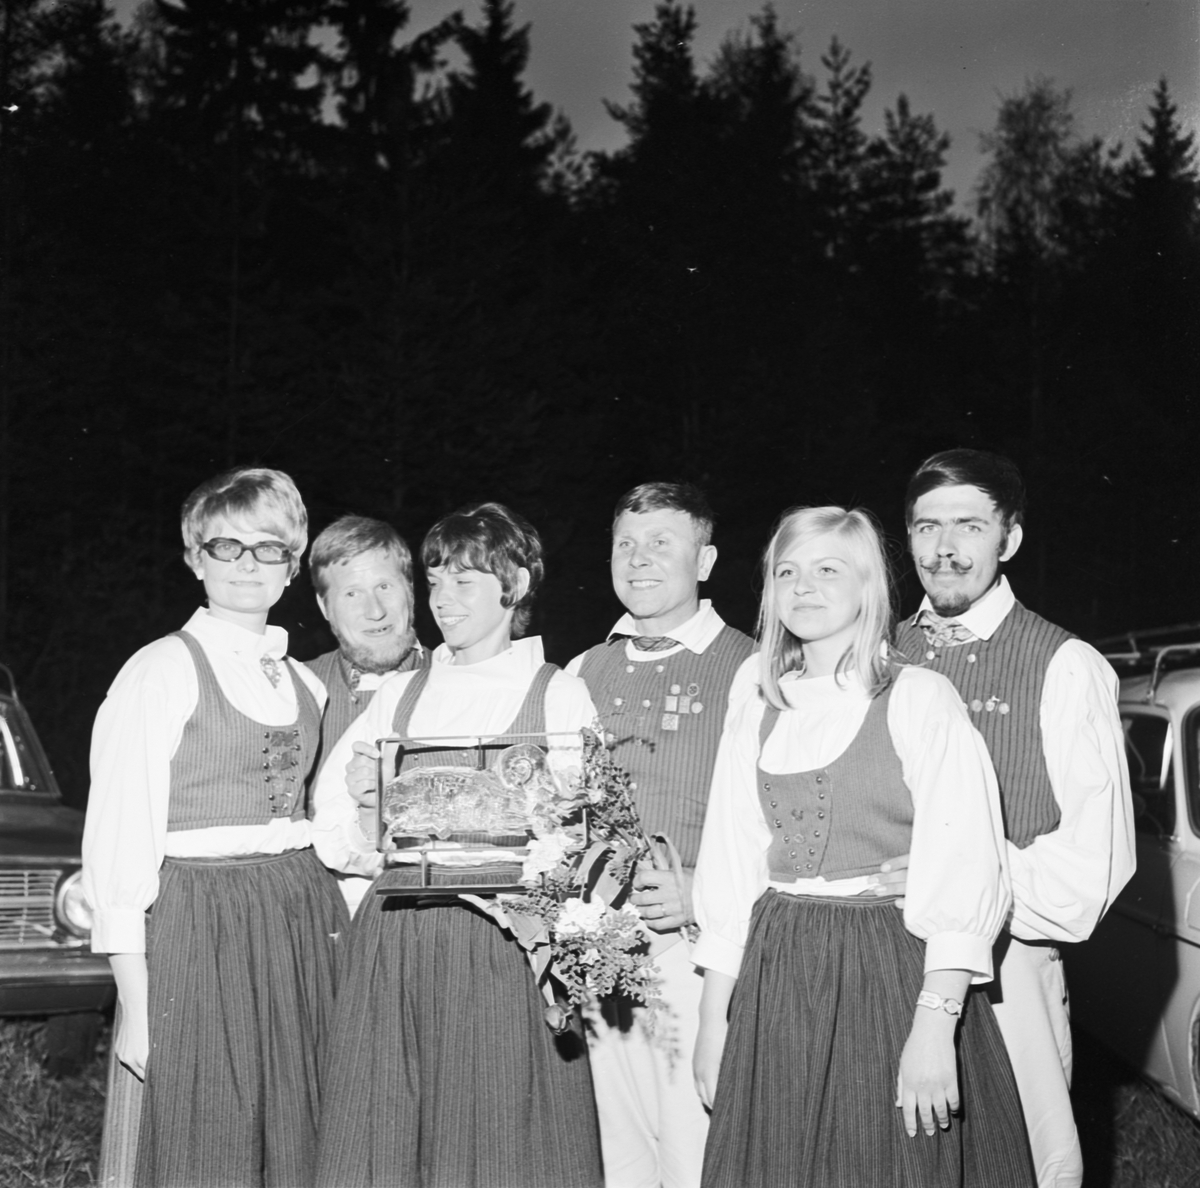 Uplandsschottisen, Tierp, Uppland 1969